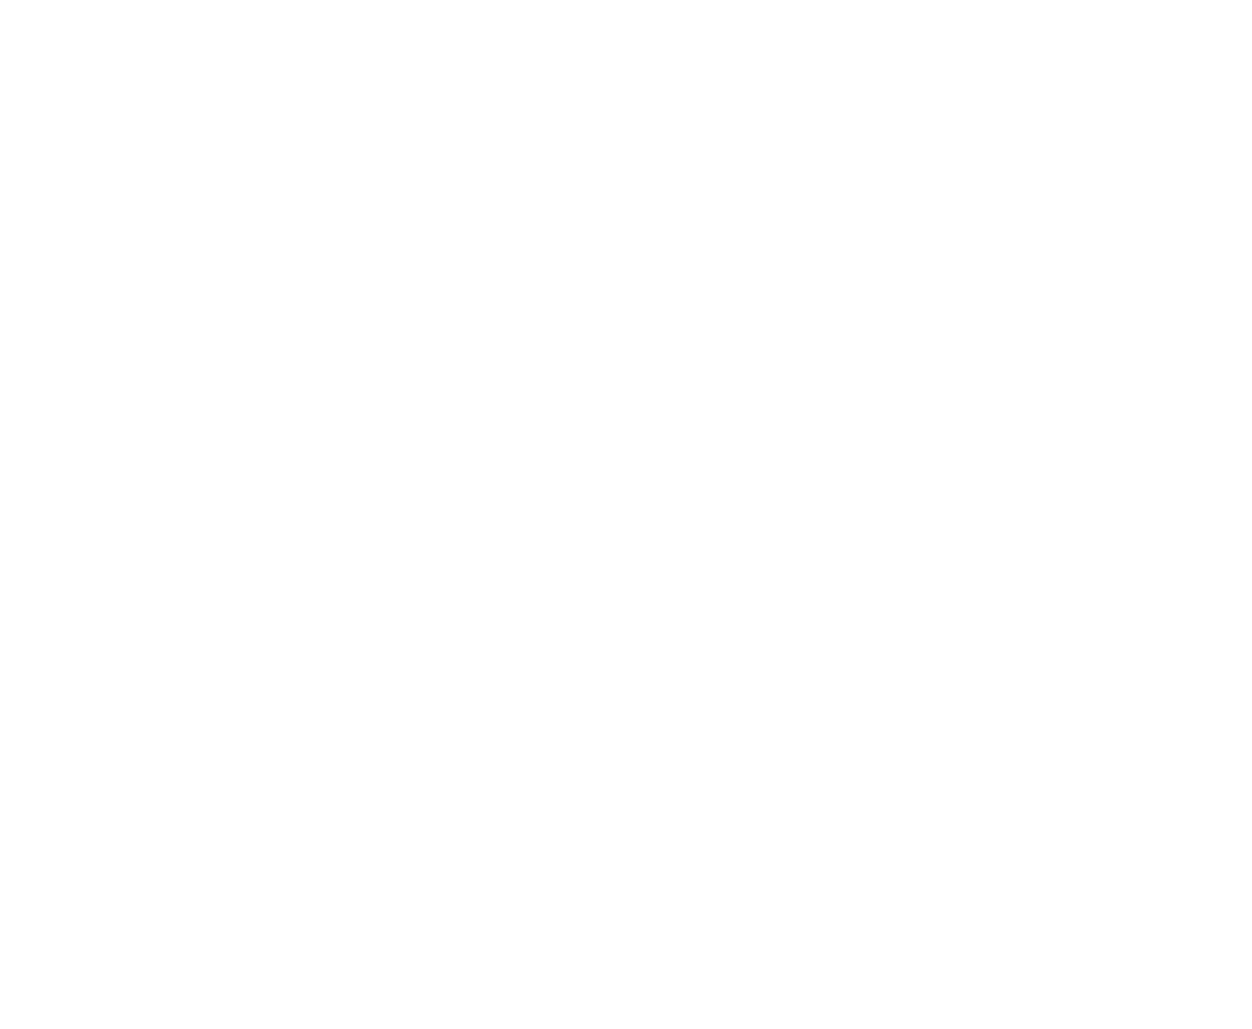 Being Erica logo